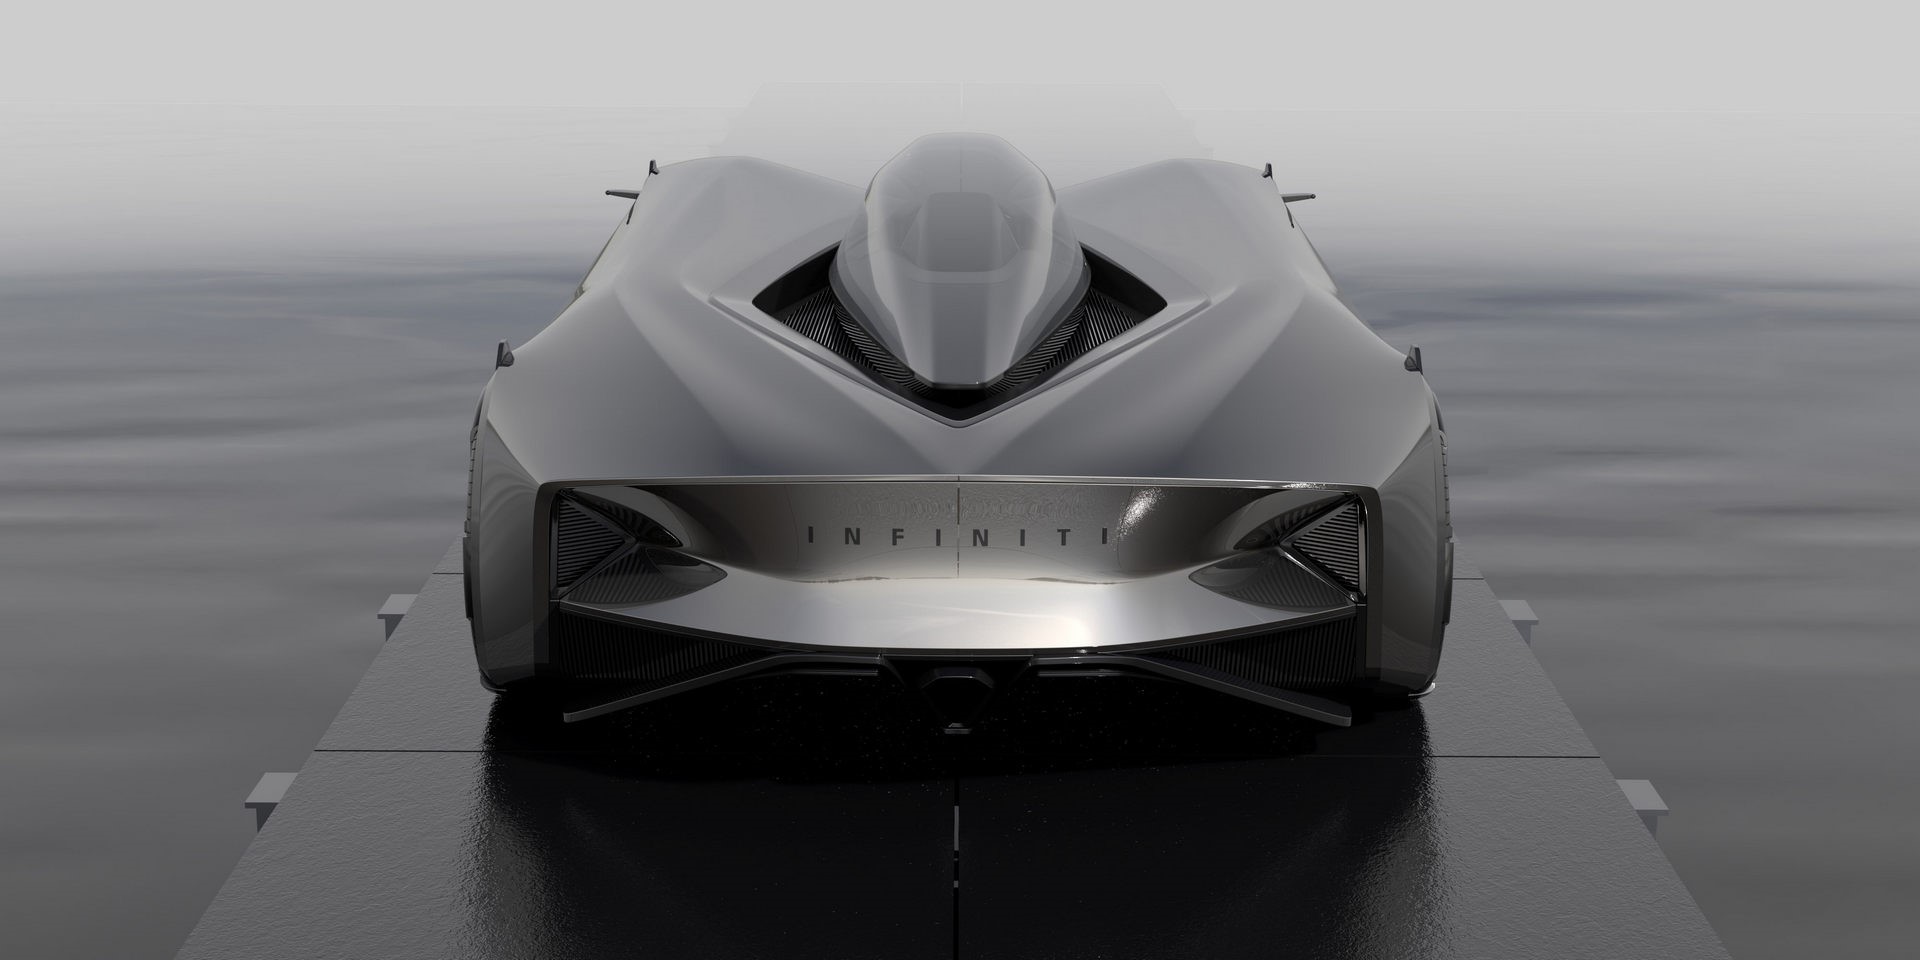 英菲尼迪QF灵感概念是未来的单座超级跑车